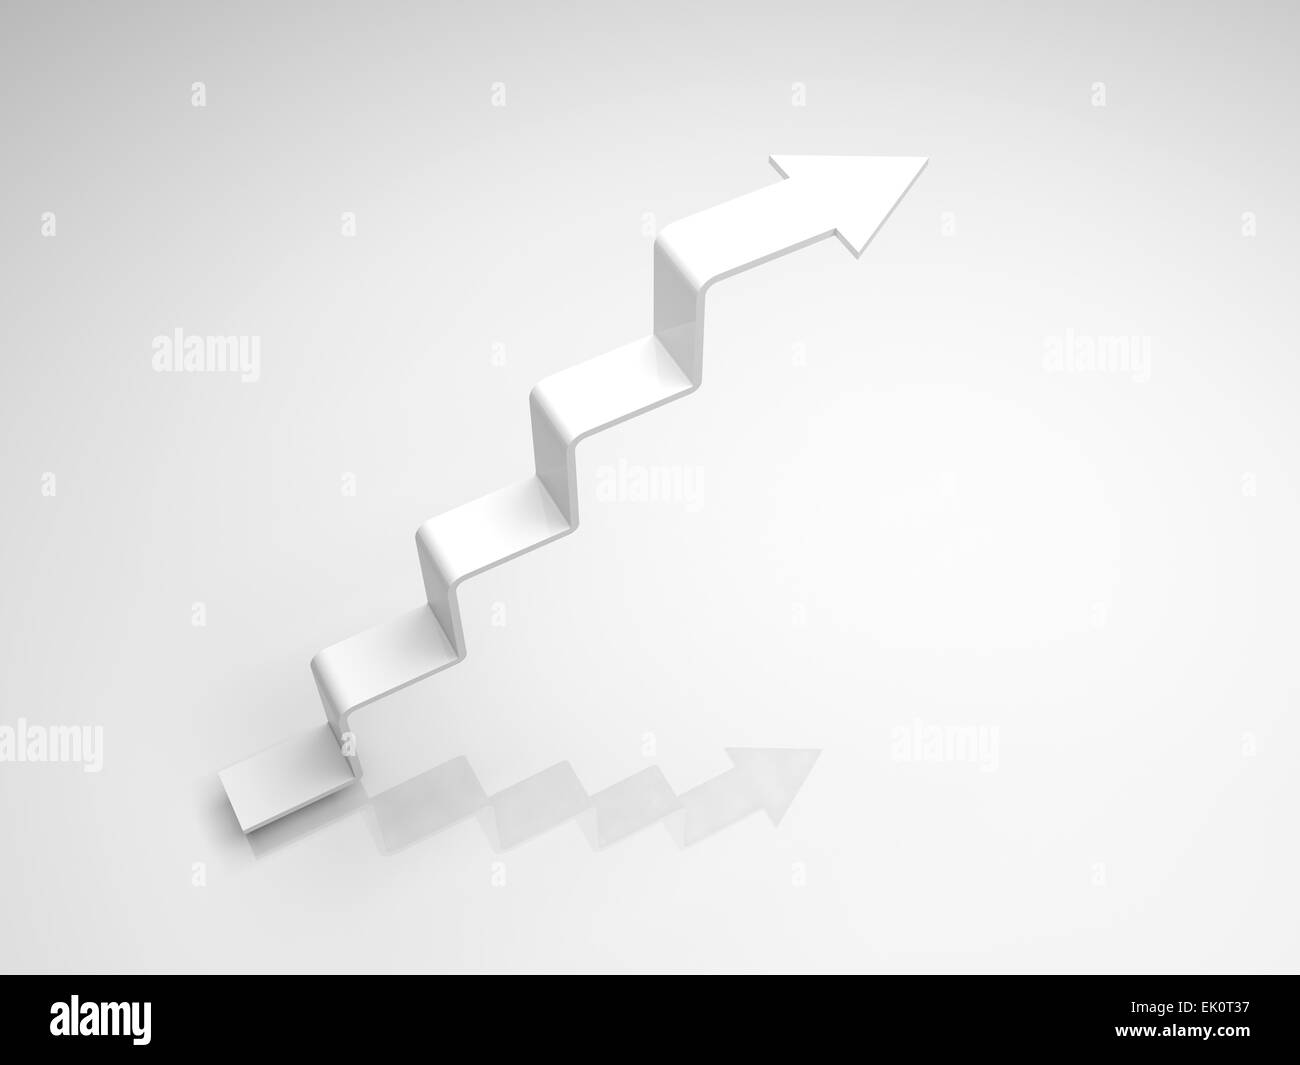 Flèche blanche en forme d'escalier qui monte, 3d illustration Banque D'Images